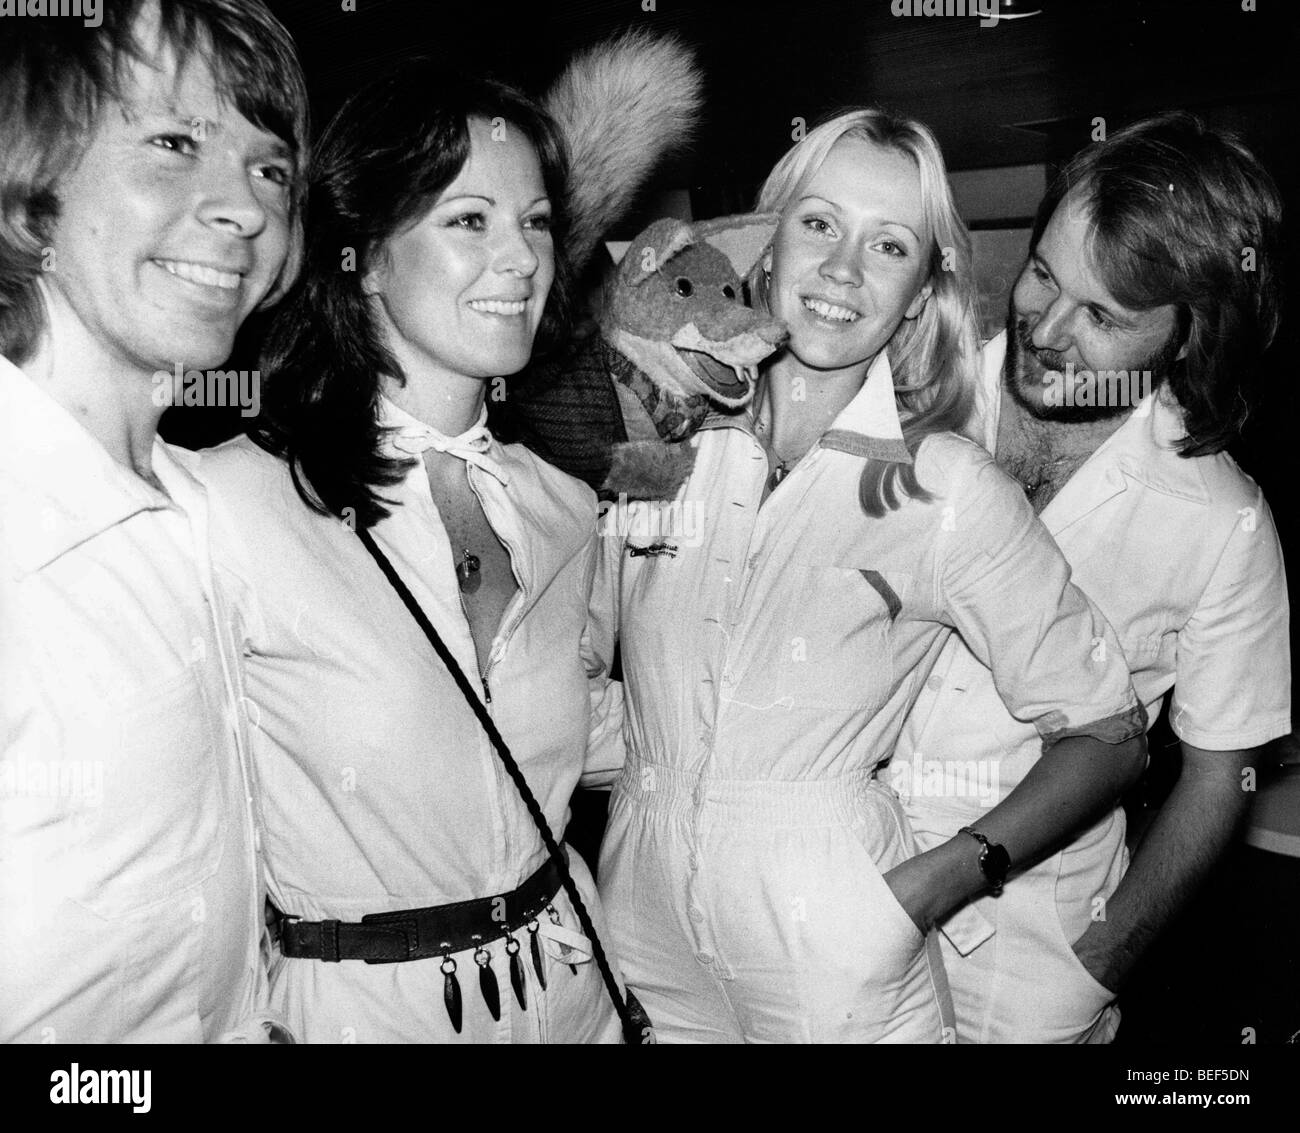 ABBA en monos blancos a mediados de los '70 (L-R) Björn Ulvaeus, Anni-Frid Lyngstad (Frida), Agnetha Fältskog, Benny Andersson Foto de stock